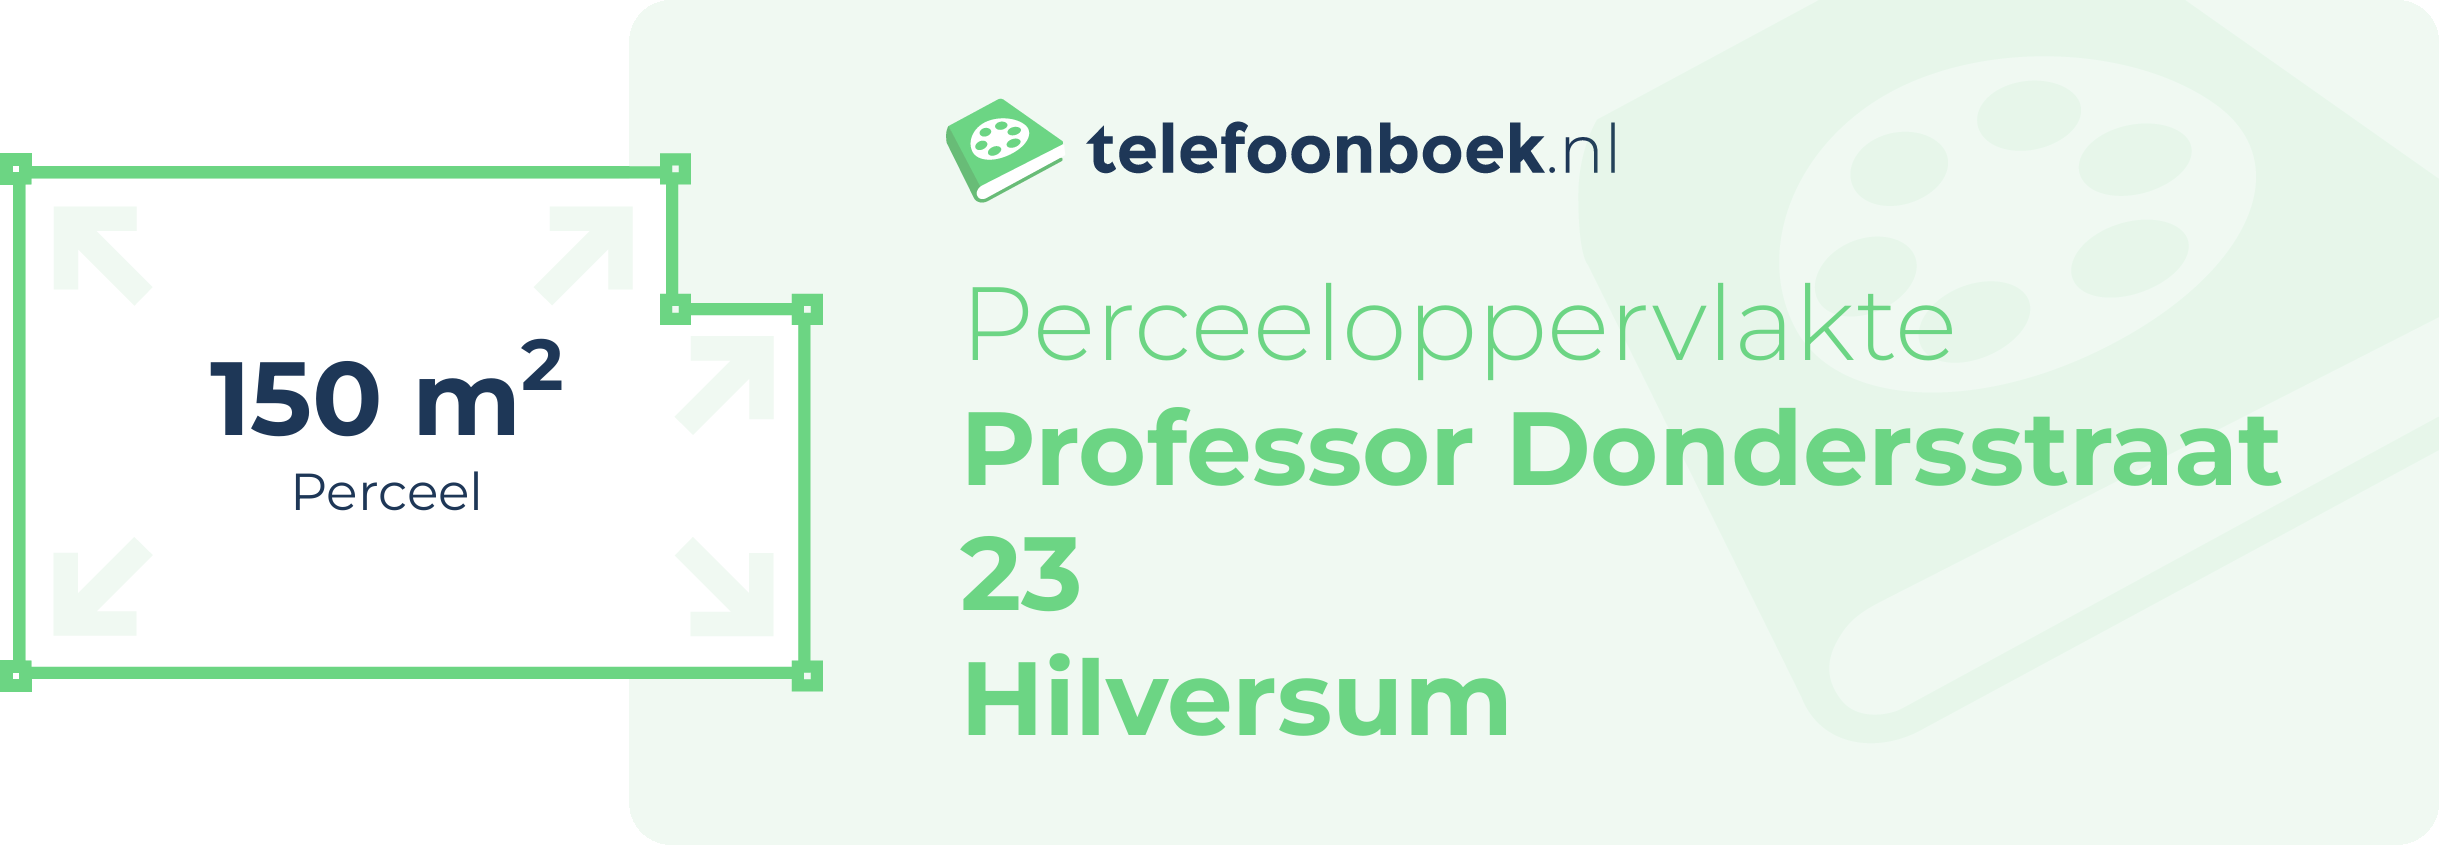 Perceeloppervlakte Professor Dondersstraat 23 Hilversum